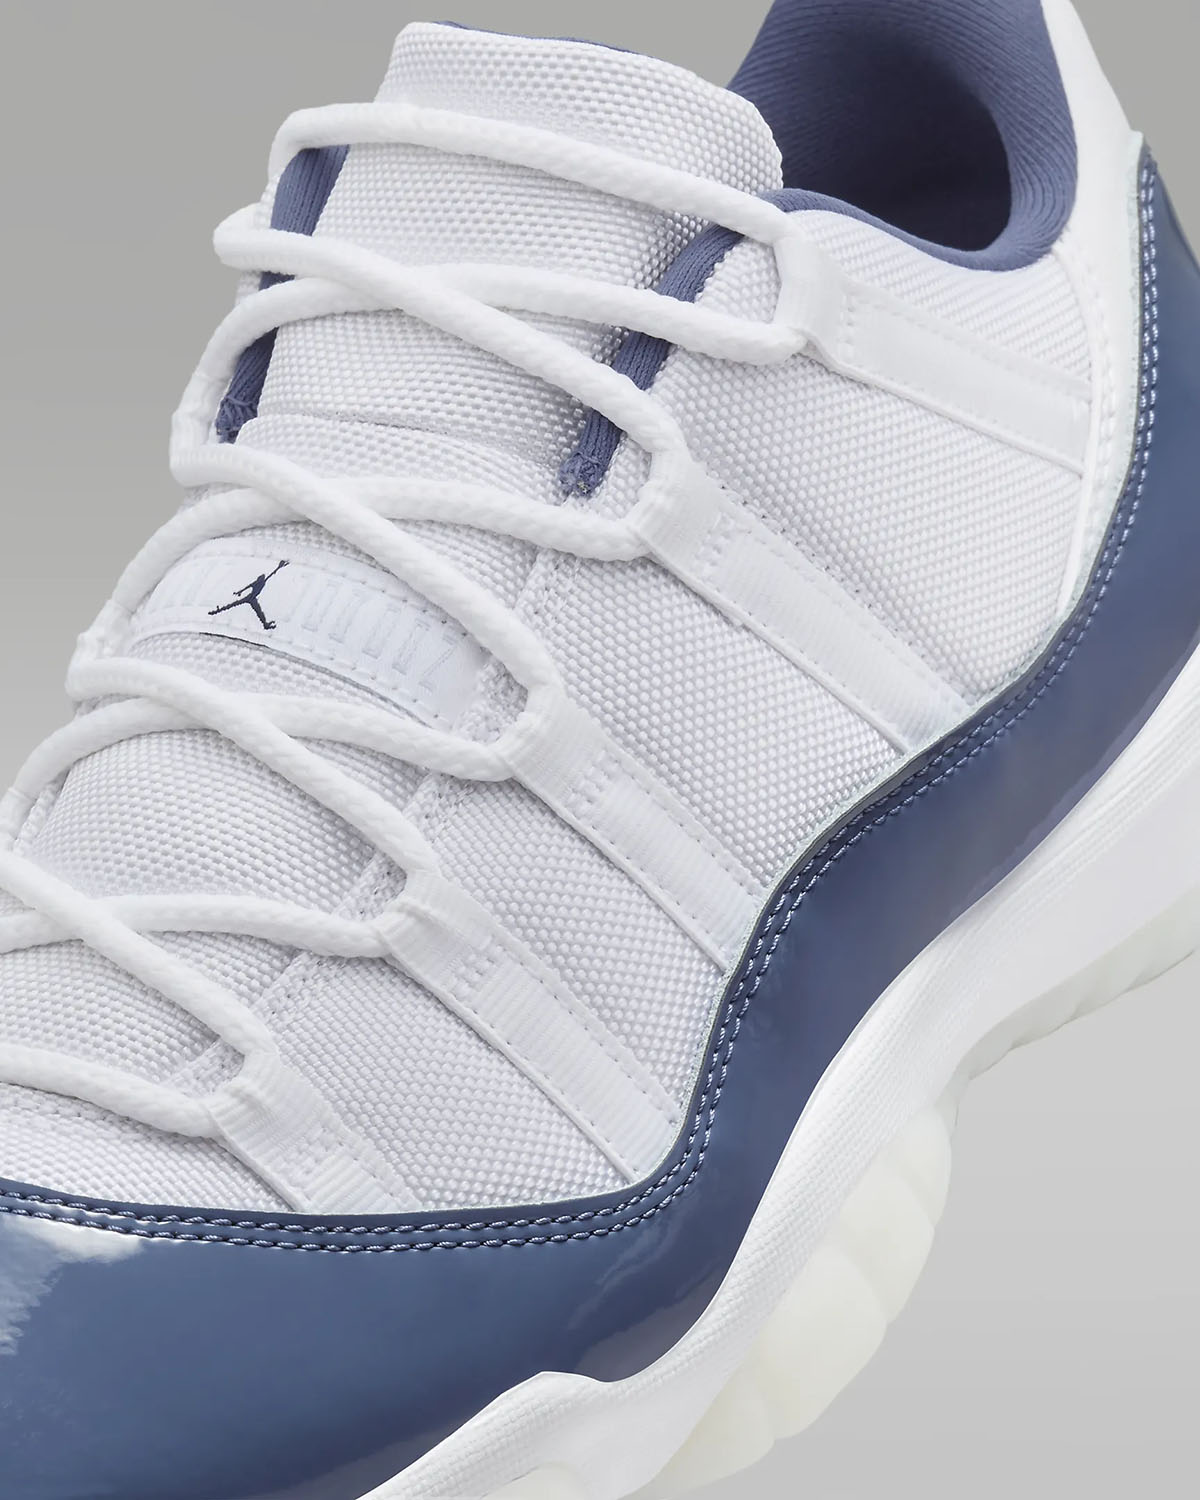 Air Jordan 11 Low Diffused Blue Shoes 7